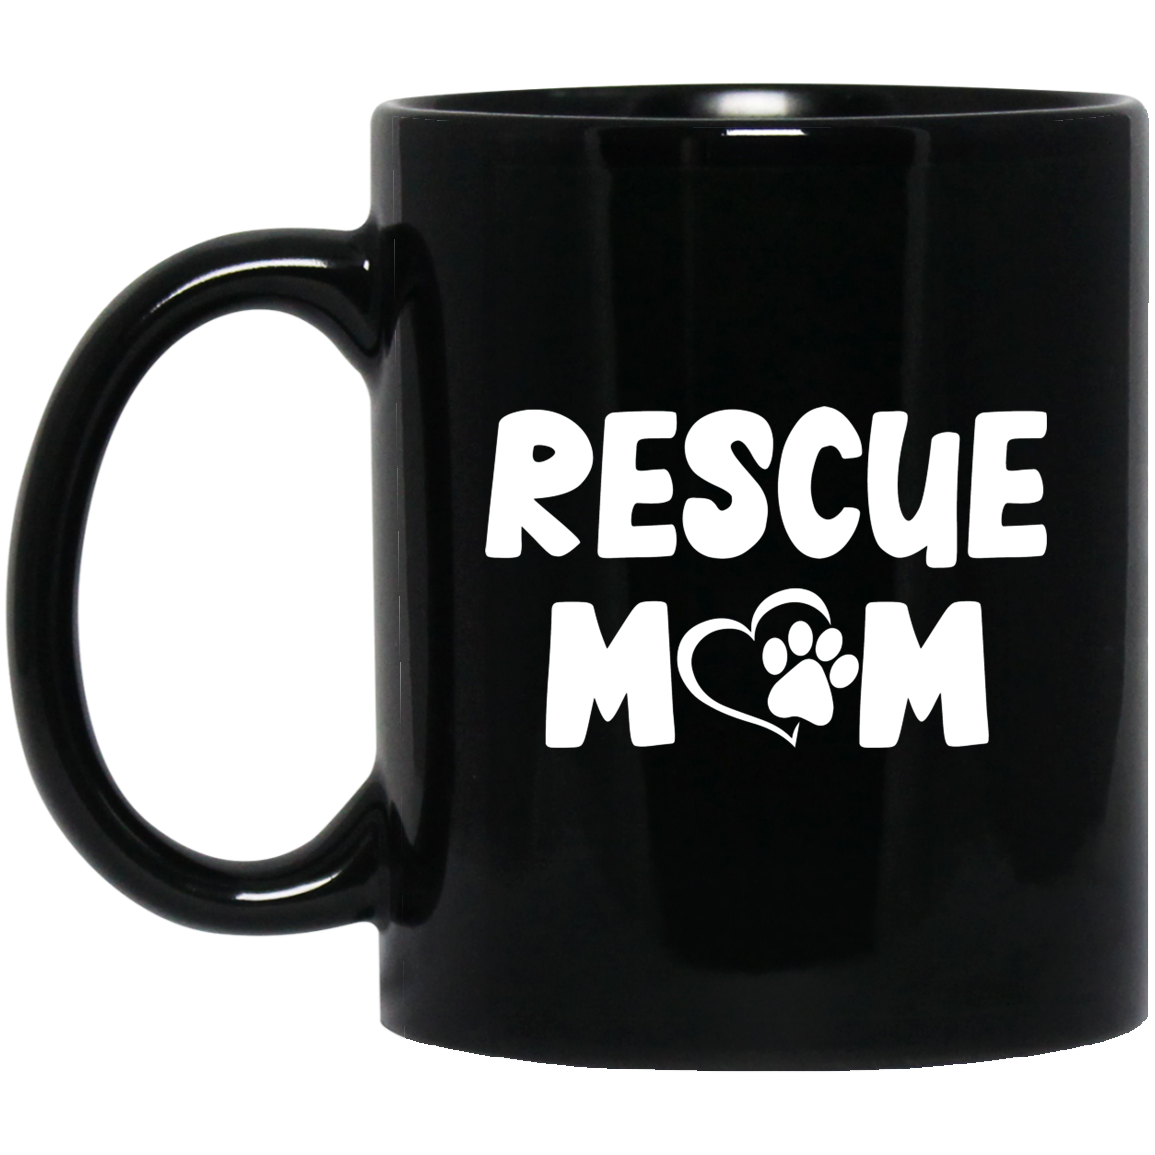 Rescue Mom - Black Mugs